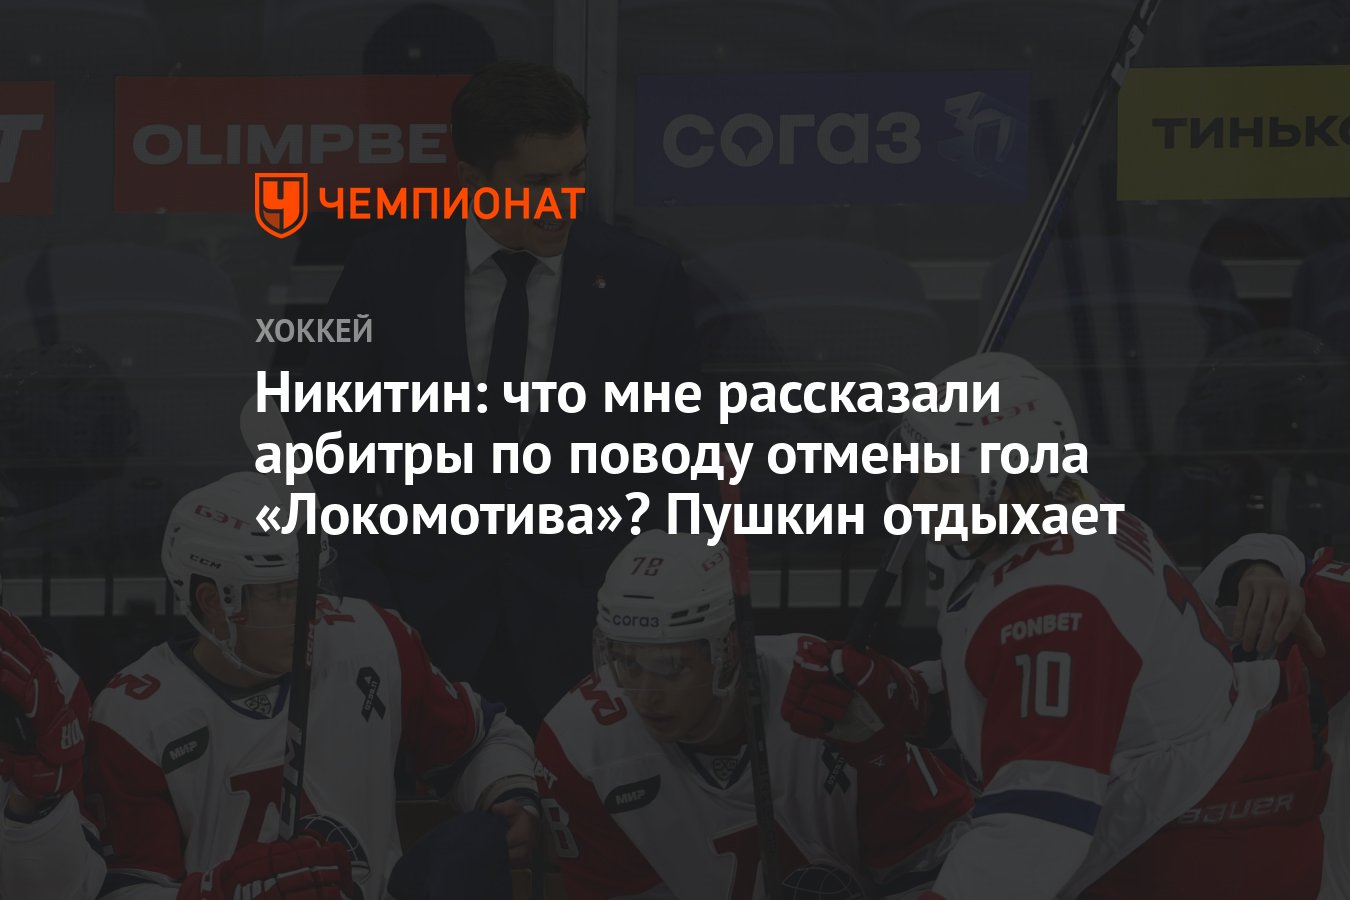 Никитин: что мне рассказали арбитры по поводу отмены гола «Локомотива»?  Пушкин отдыхает - Чемпионат